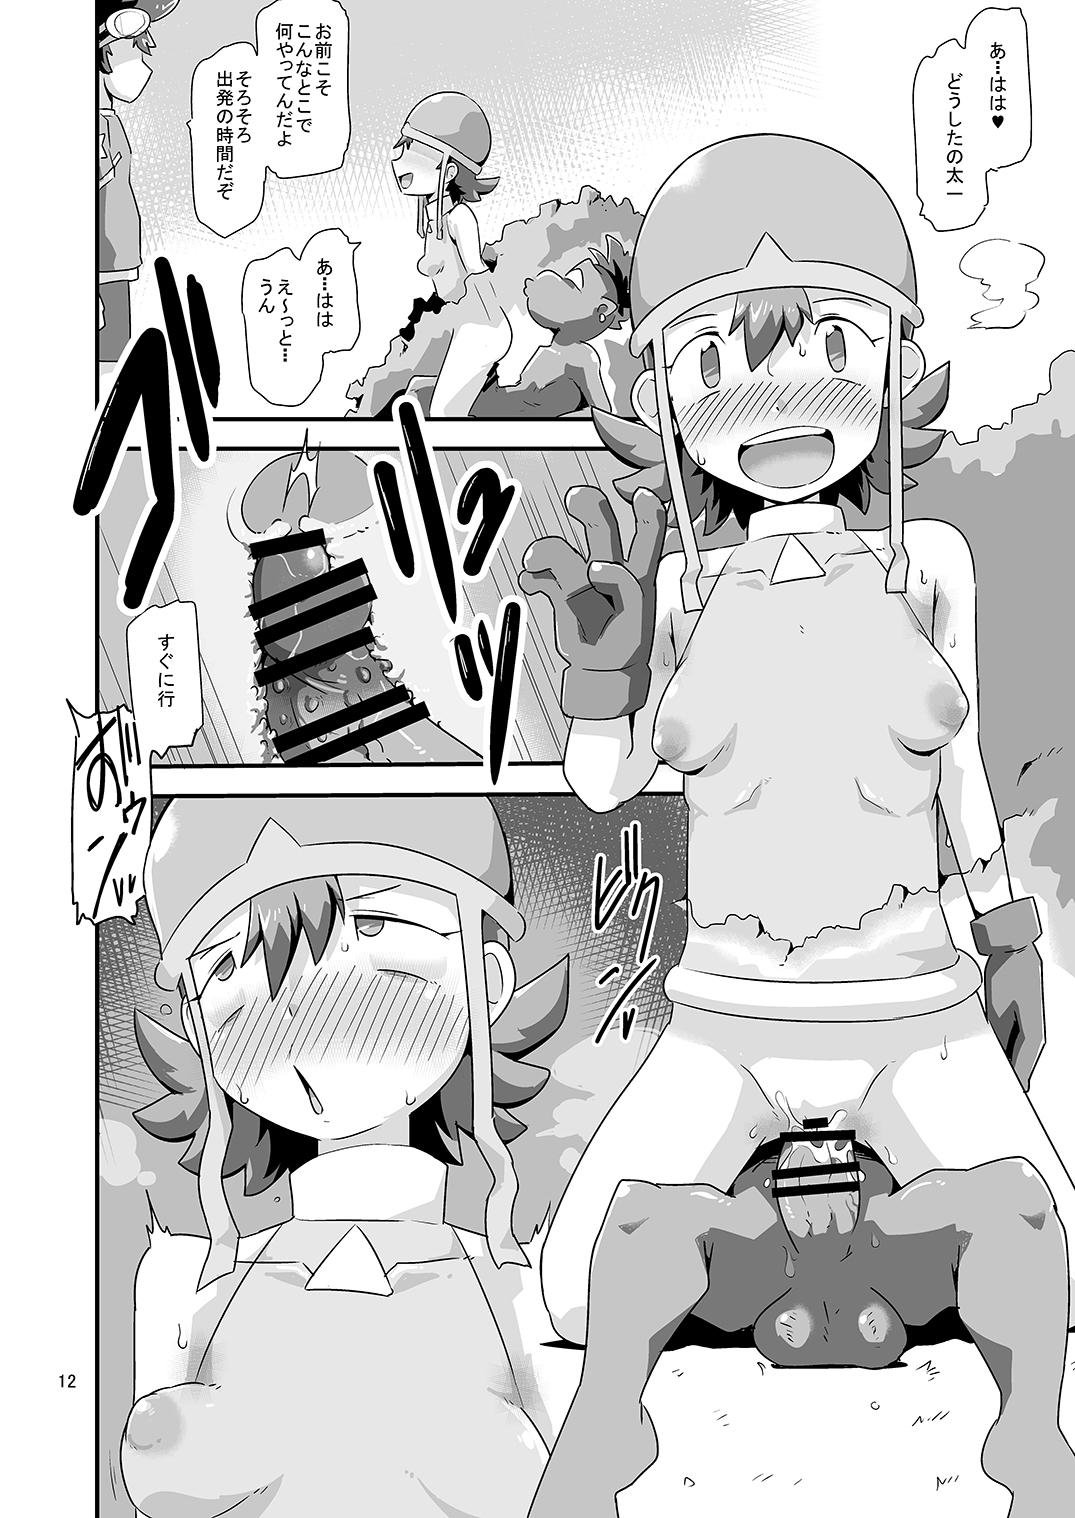 Lez Hardcore Gobli nanka ni Zettai Makenai mon: - Digimon Hd Porn - Page 13